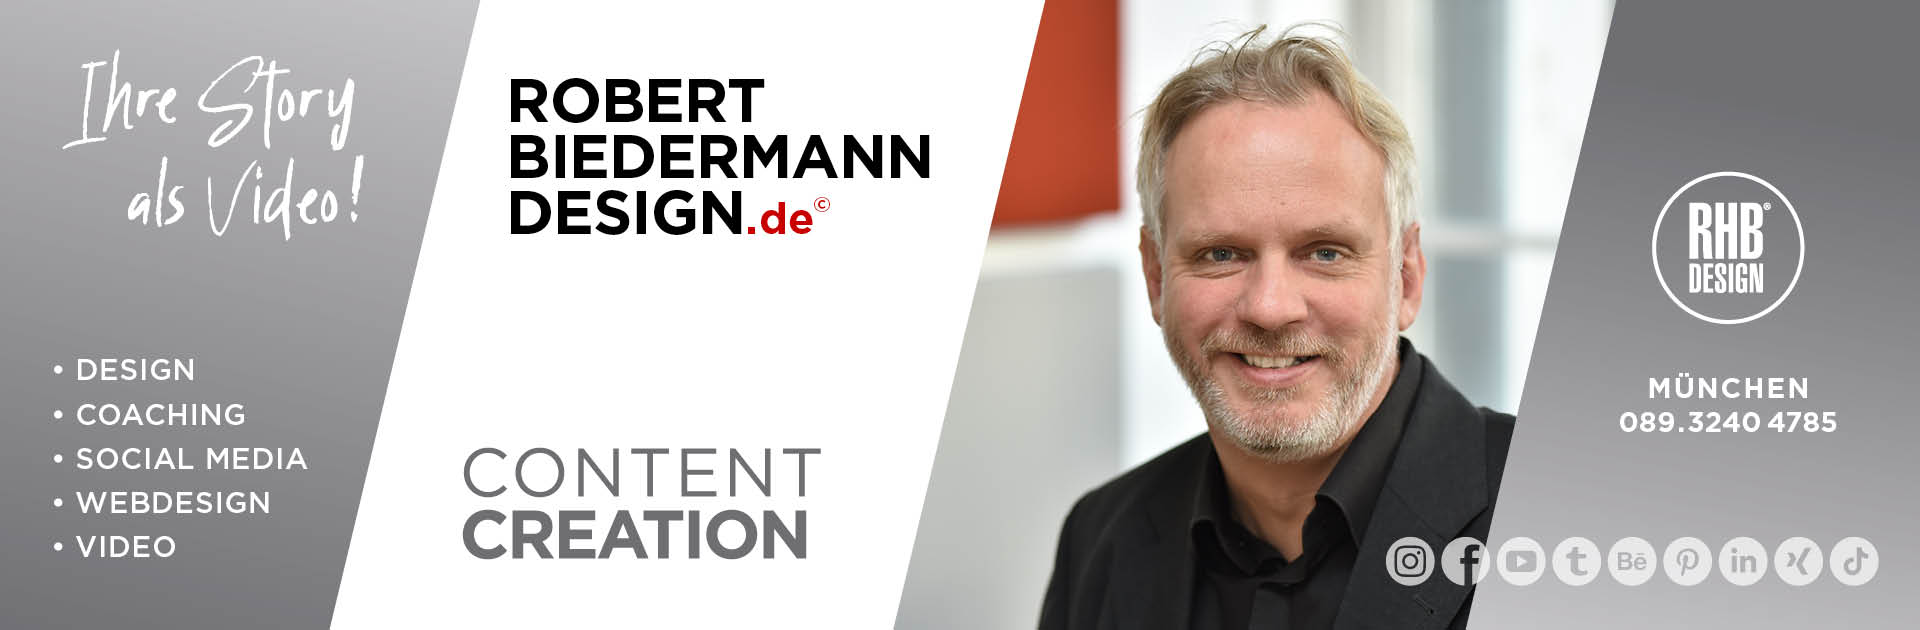 Robert-Biedermann-Design